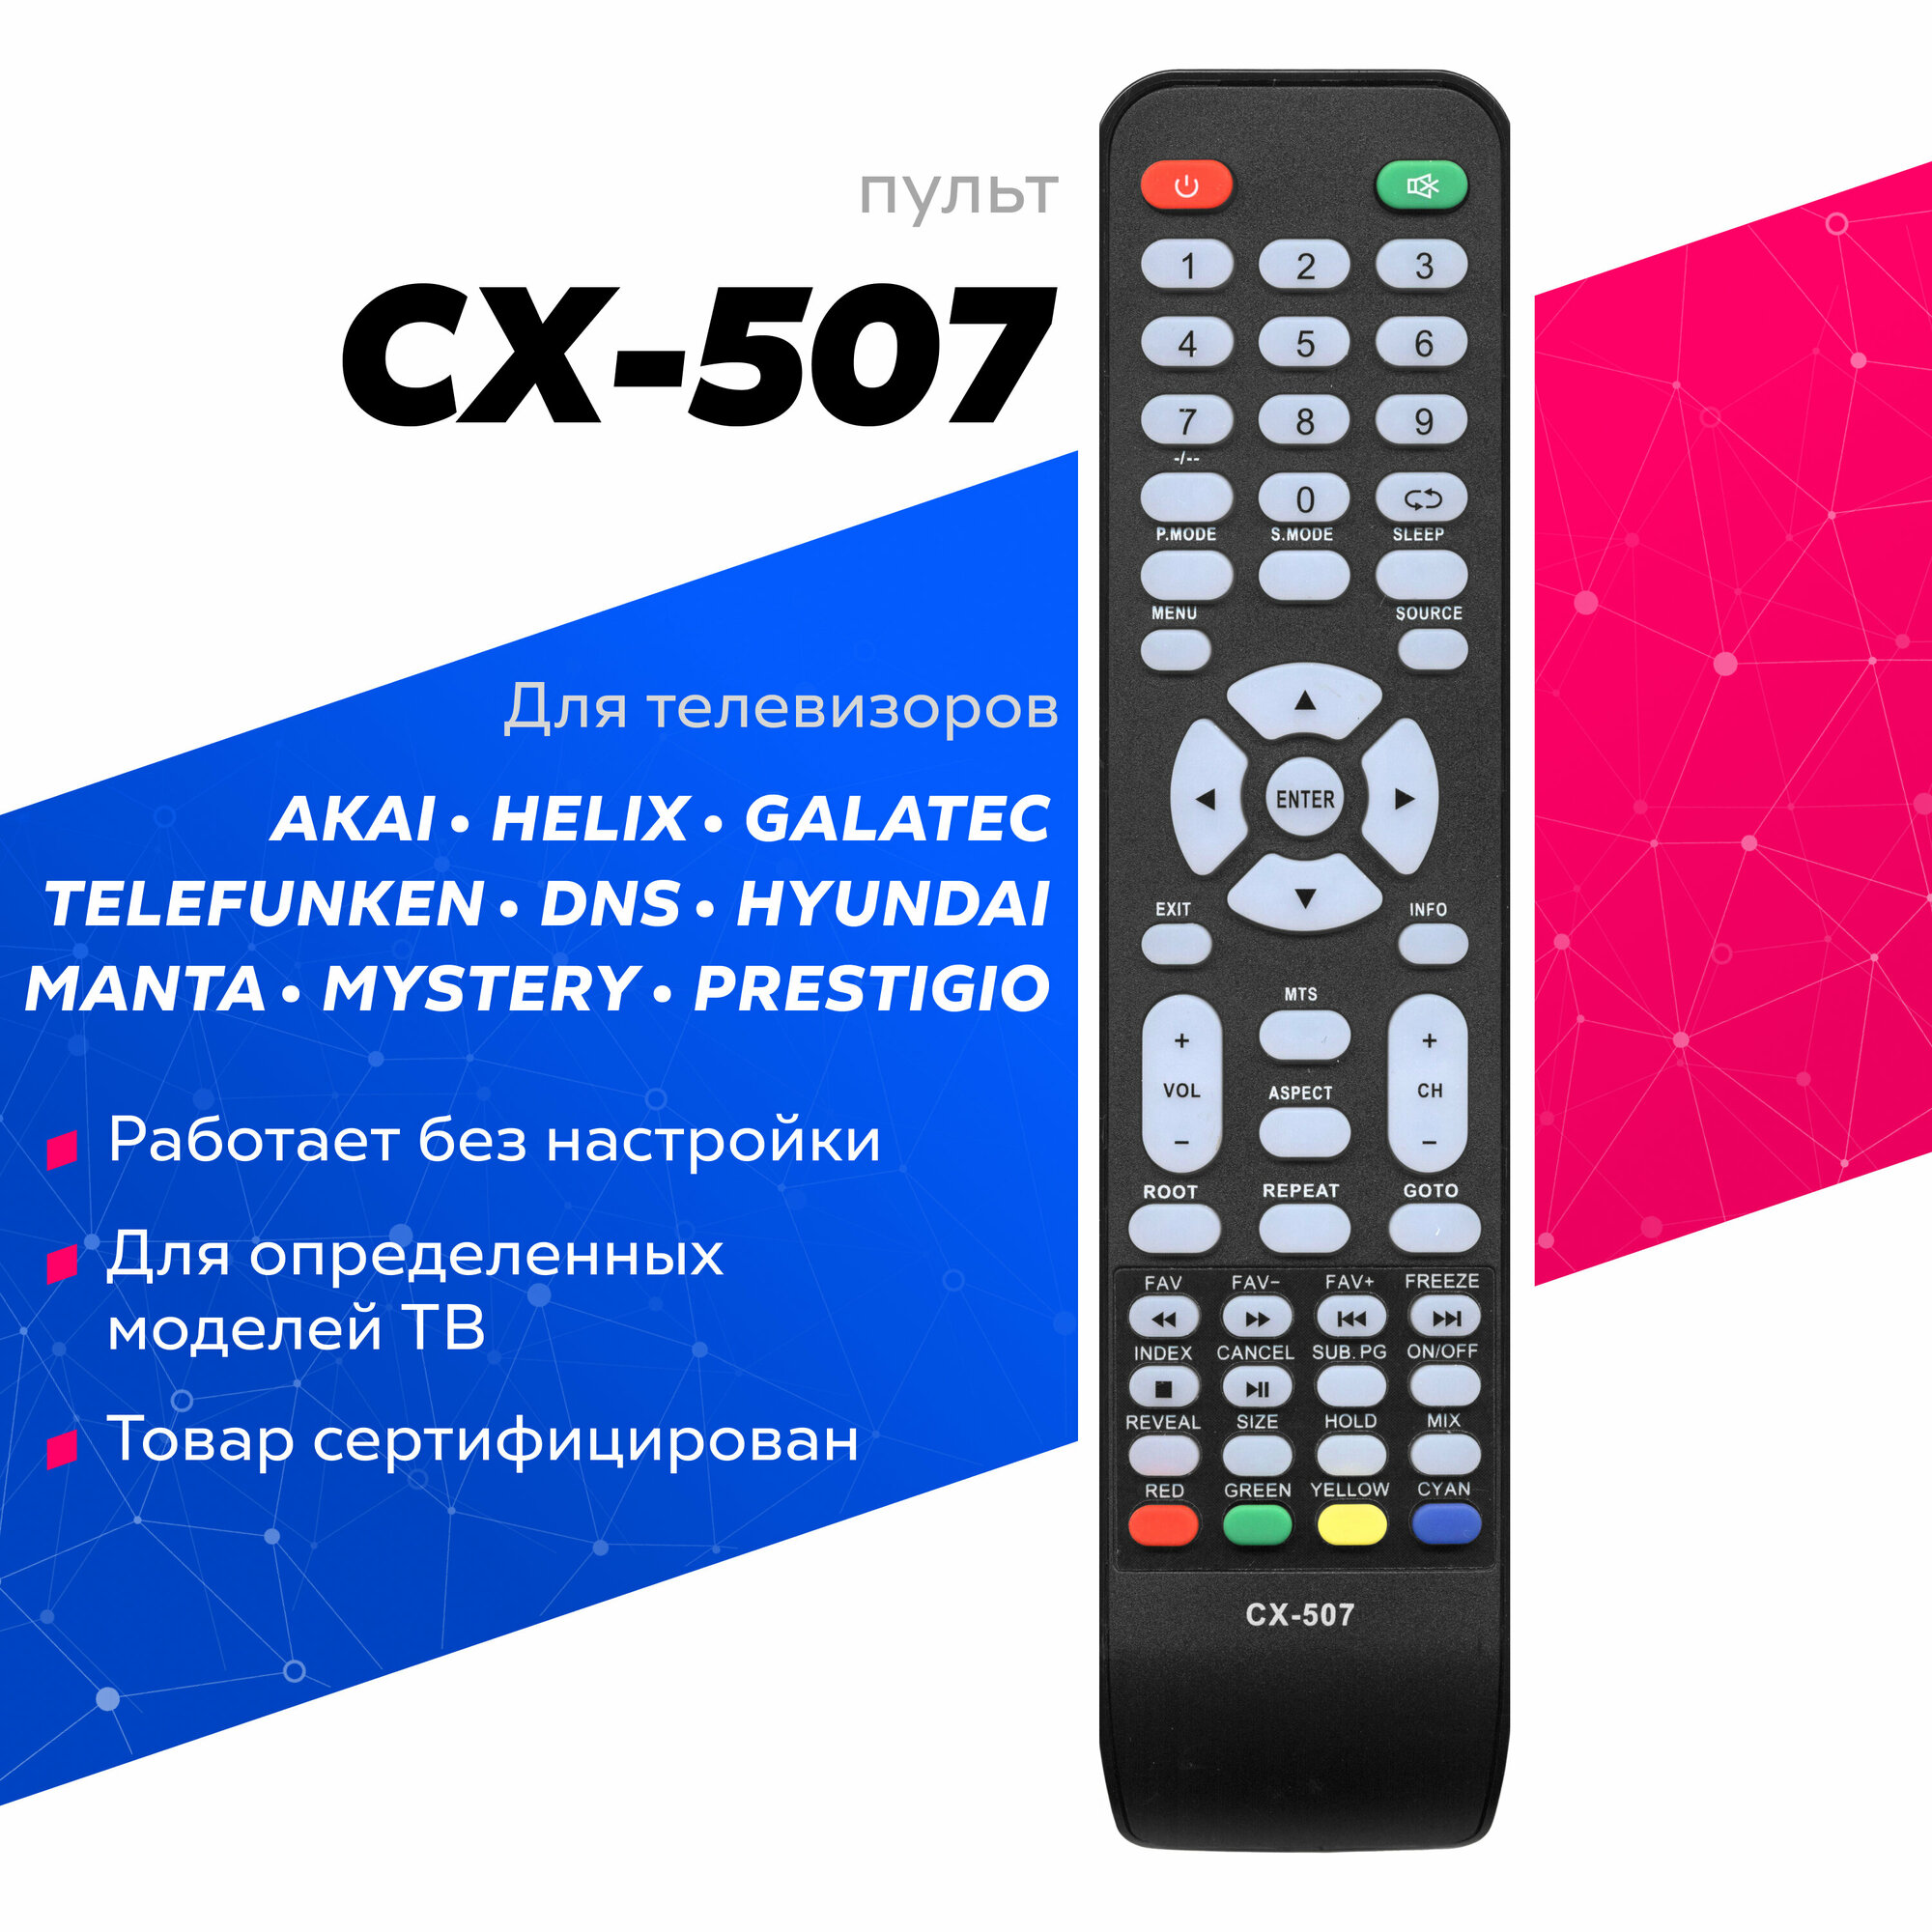 Пульт Huayu CX-507 для телевизоров разных брендов